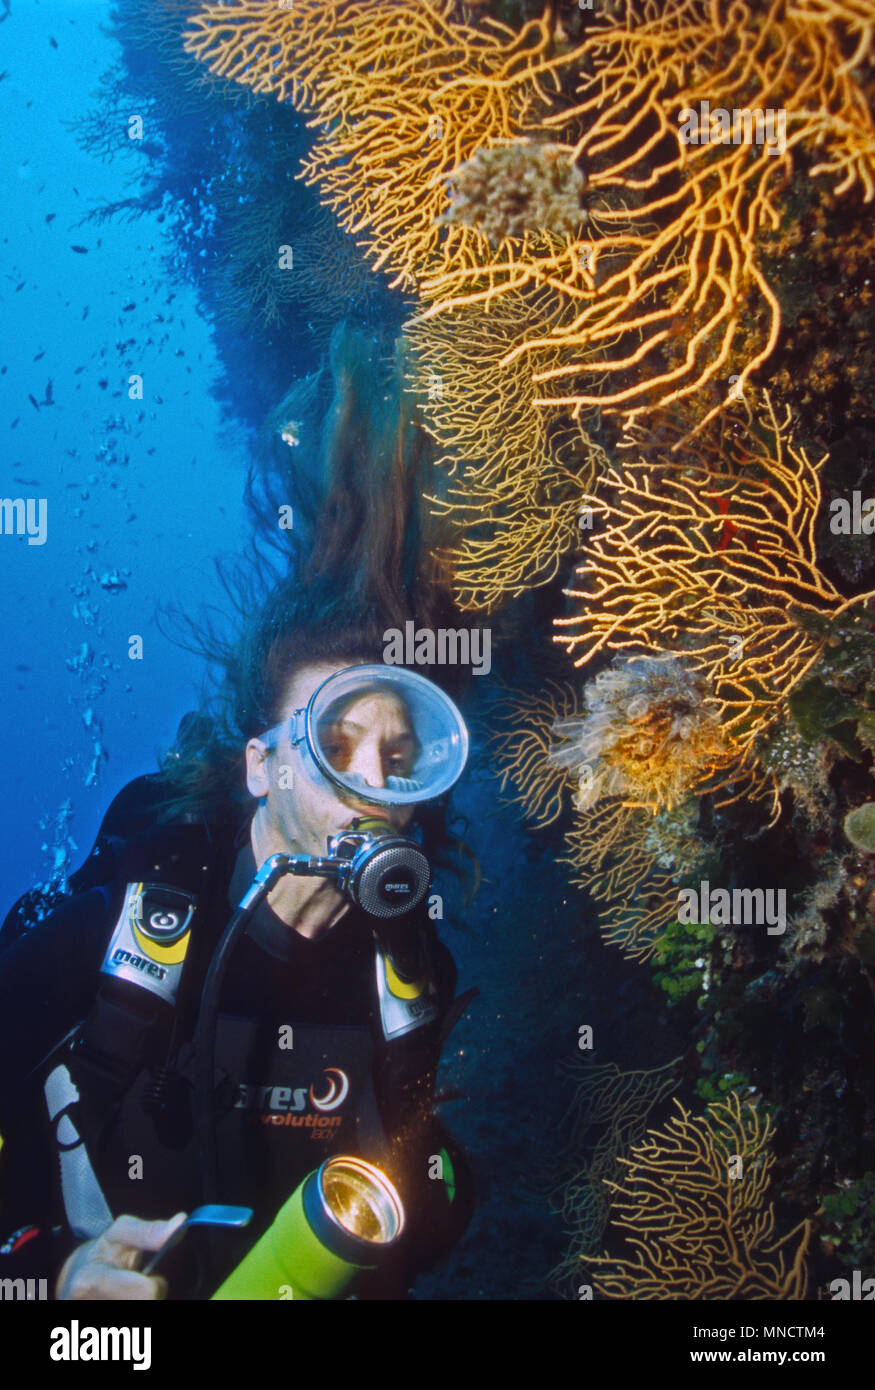 Taucher und gelber Gorgonia fan Coral im Mittelmeer | Mittelmeer Taucherin mit Fächerkoralle/27.09.05 Gorgonien (Eunicella cavolinii) Stockfoto